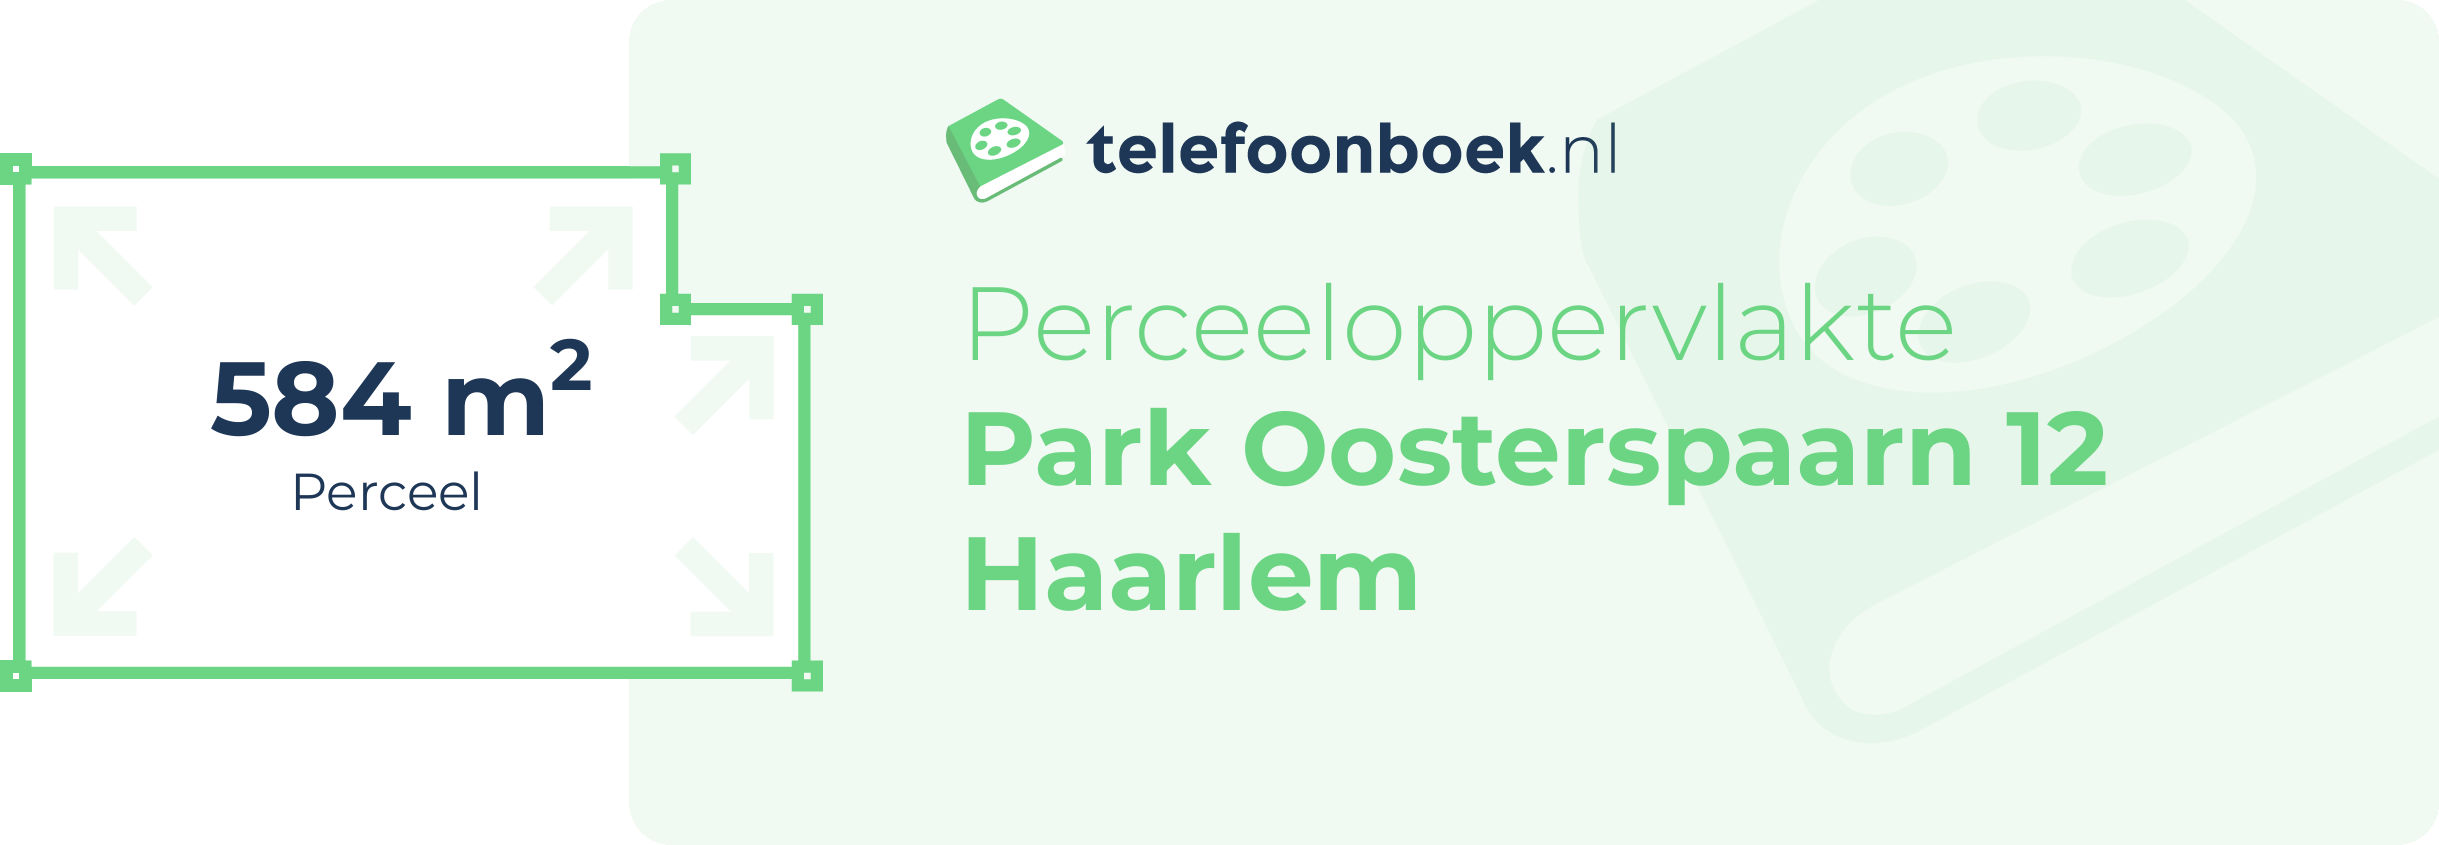 Perceeloppervlakte Park Oosterspaarn 12 Haarlem